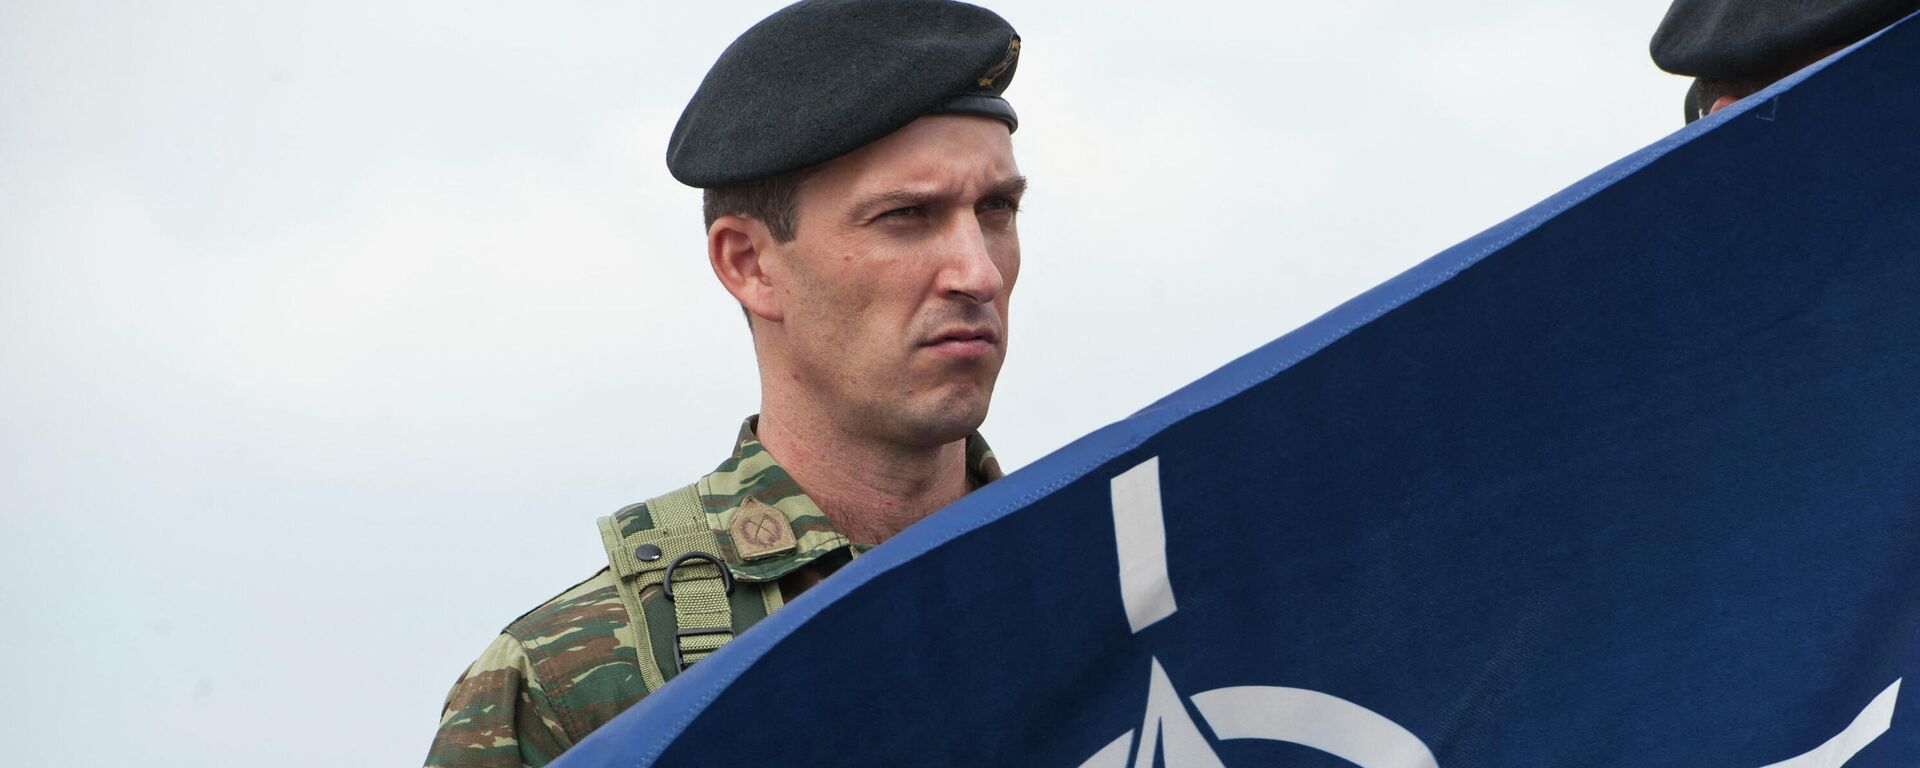 Члены миротворческих сил под руководством НАТО в Косово (KFOR) держат флаг НАТО - Sputnik Абхазия, 1920, 21.03.2022